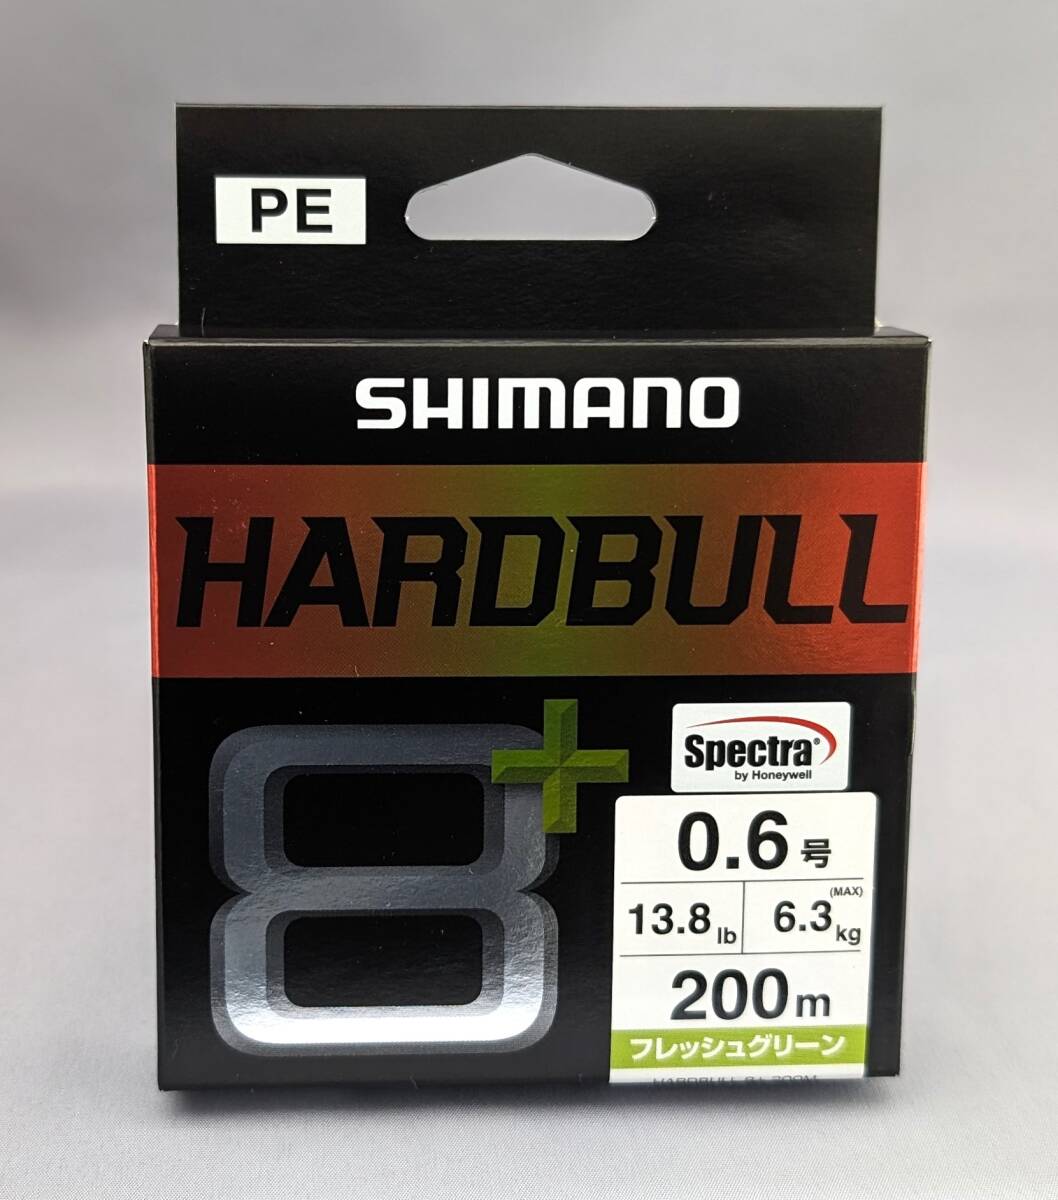  быстрое решение!! Shimano * твердый bru8+ 0.6 номер 200m свежий зеленый * новый товар SHIMANO HARDBULL